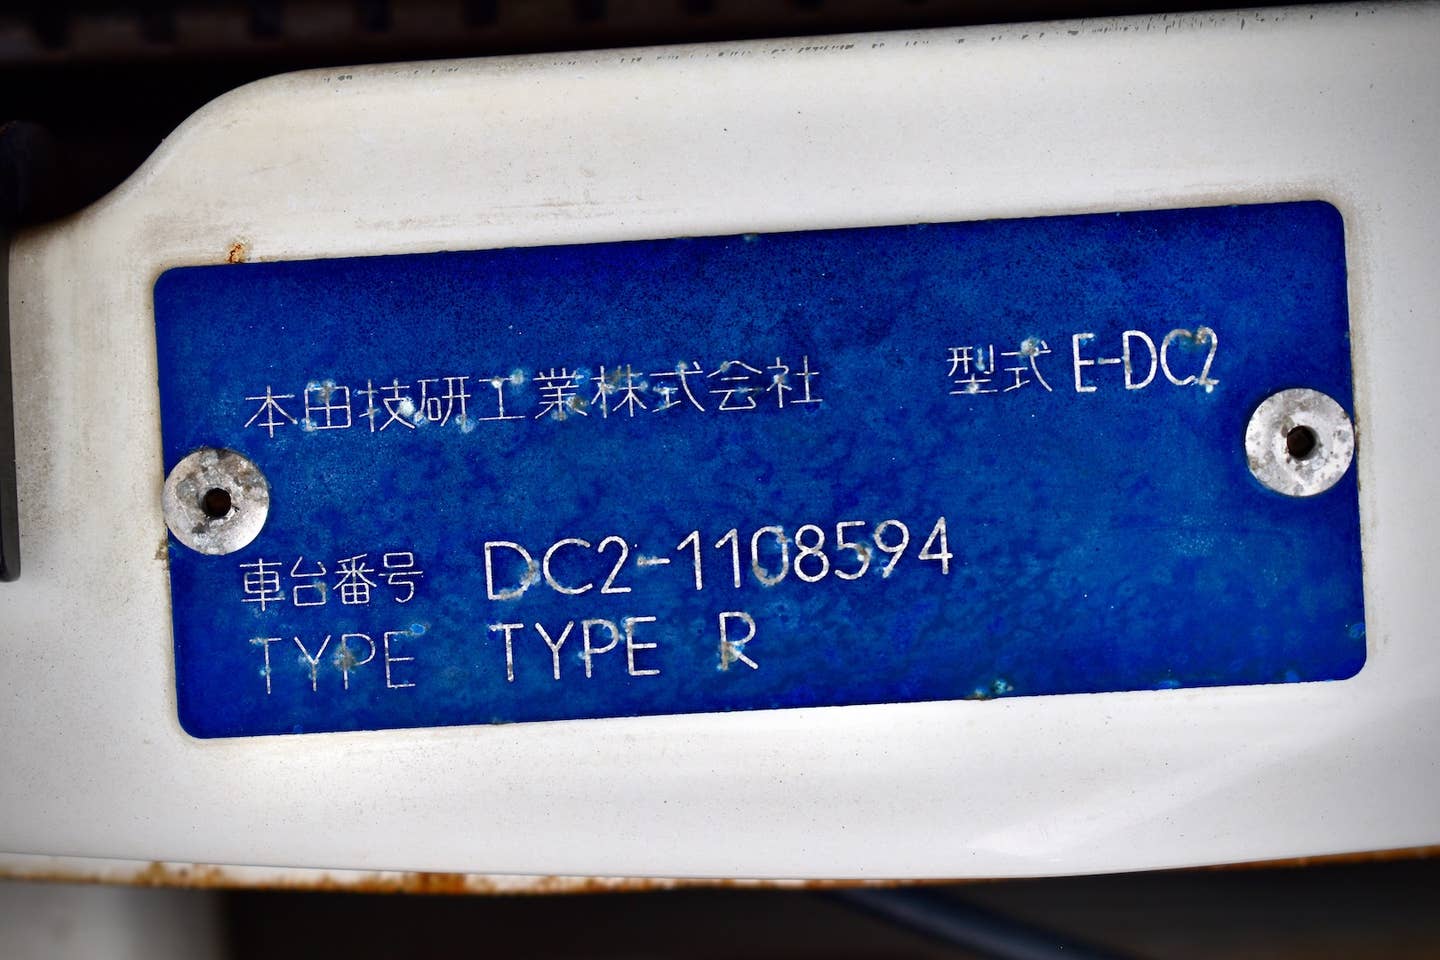 1996 Honda Integra Type R serial number